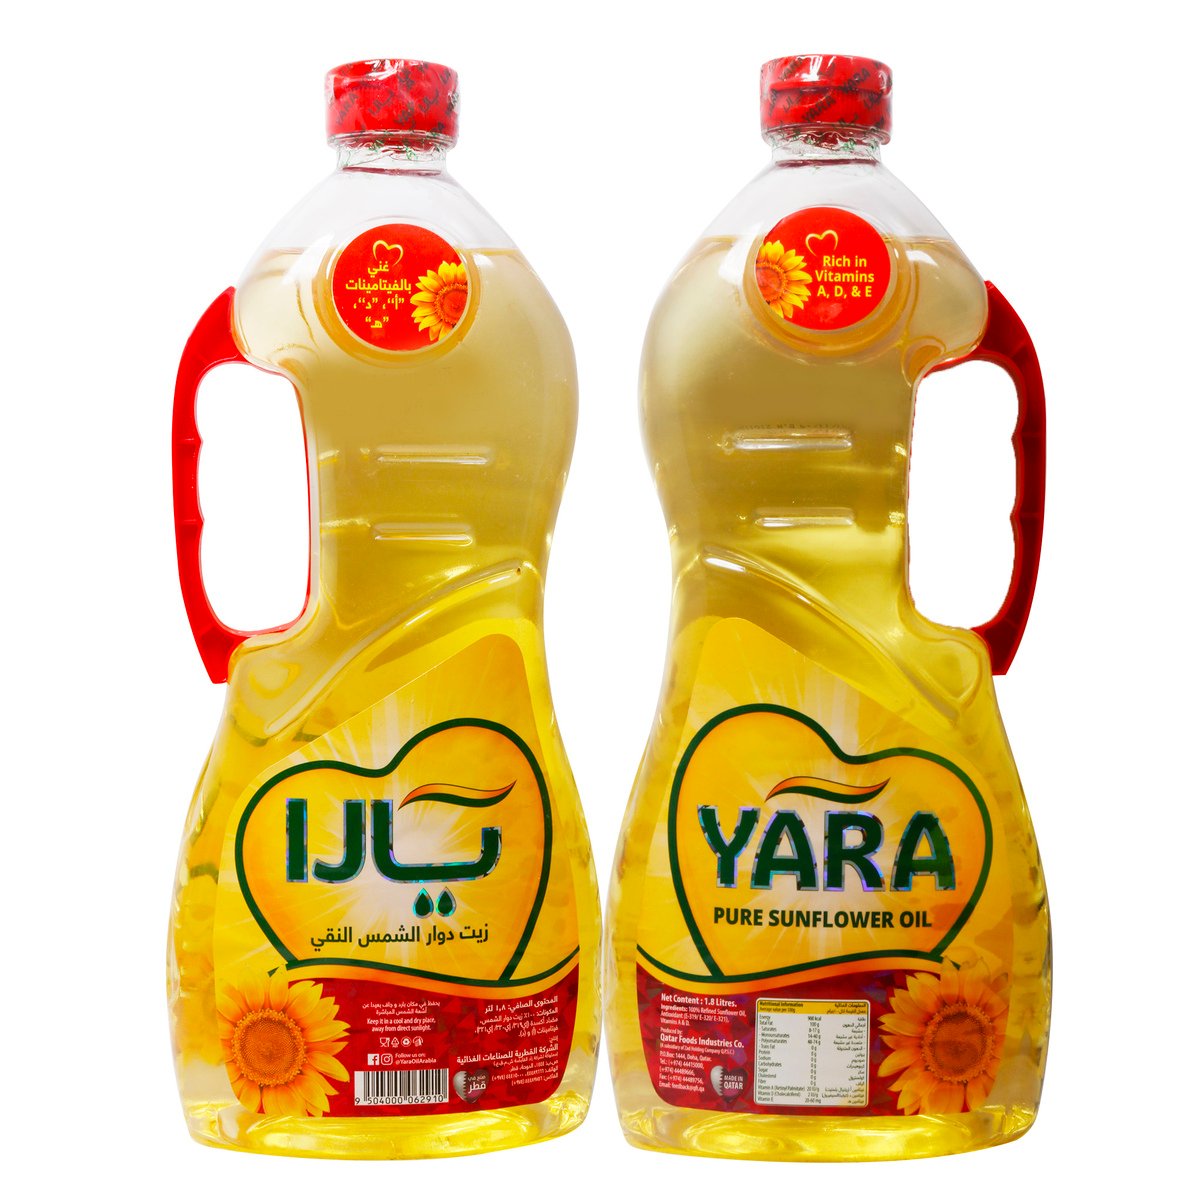 Yara Sunflower Oil 2 x 1.8Litre